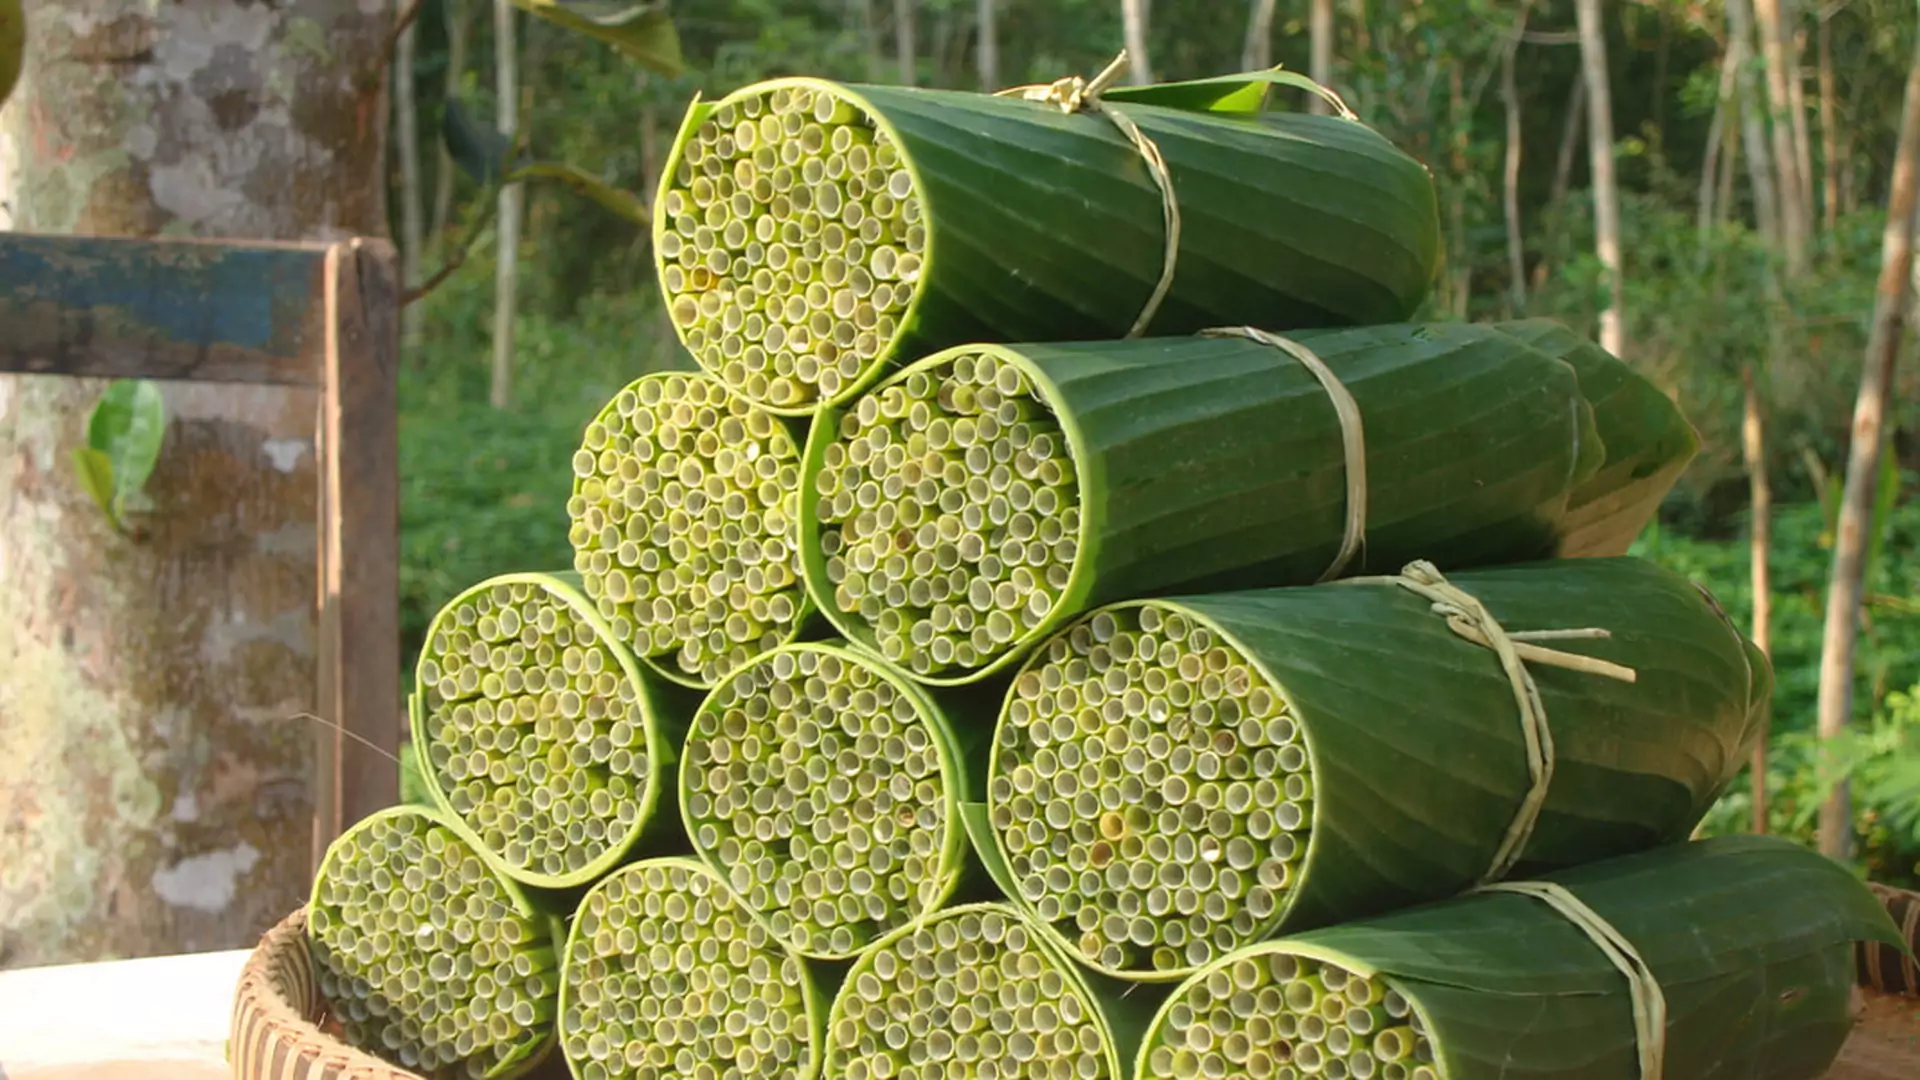 Roślinne słomki z Wietnamu mogą pomóc Azji w walce z plastikiem